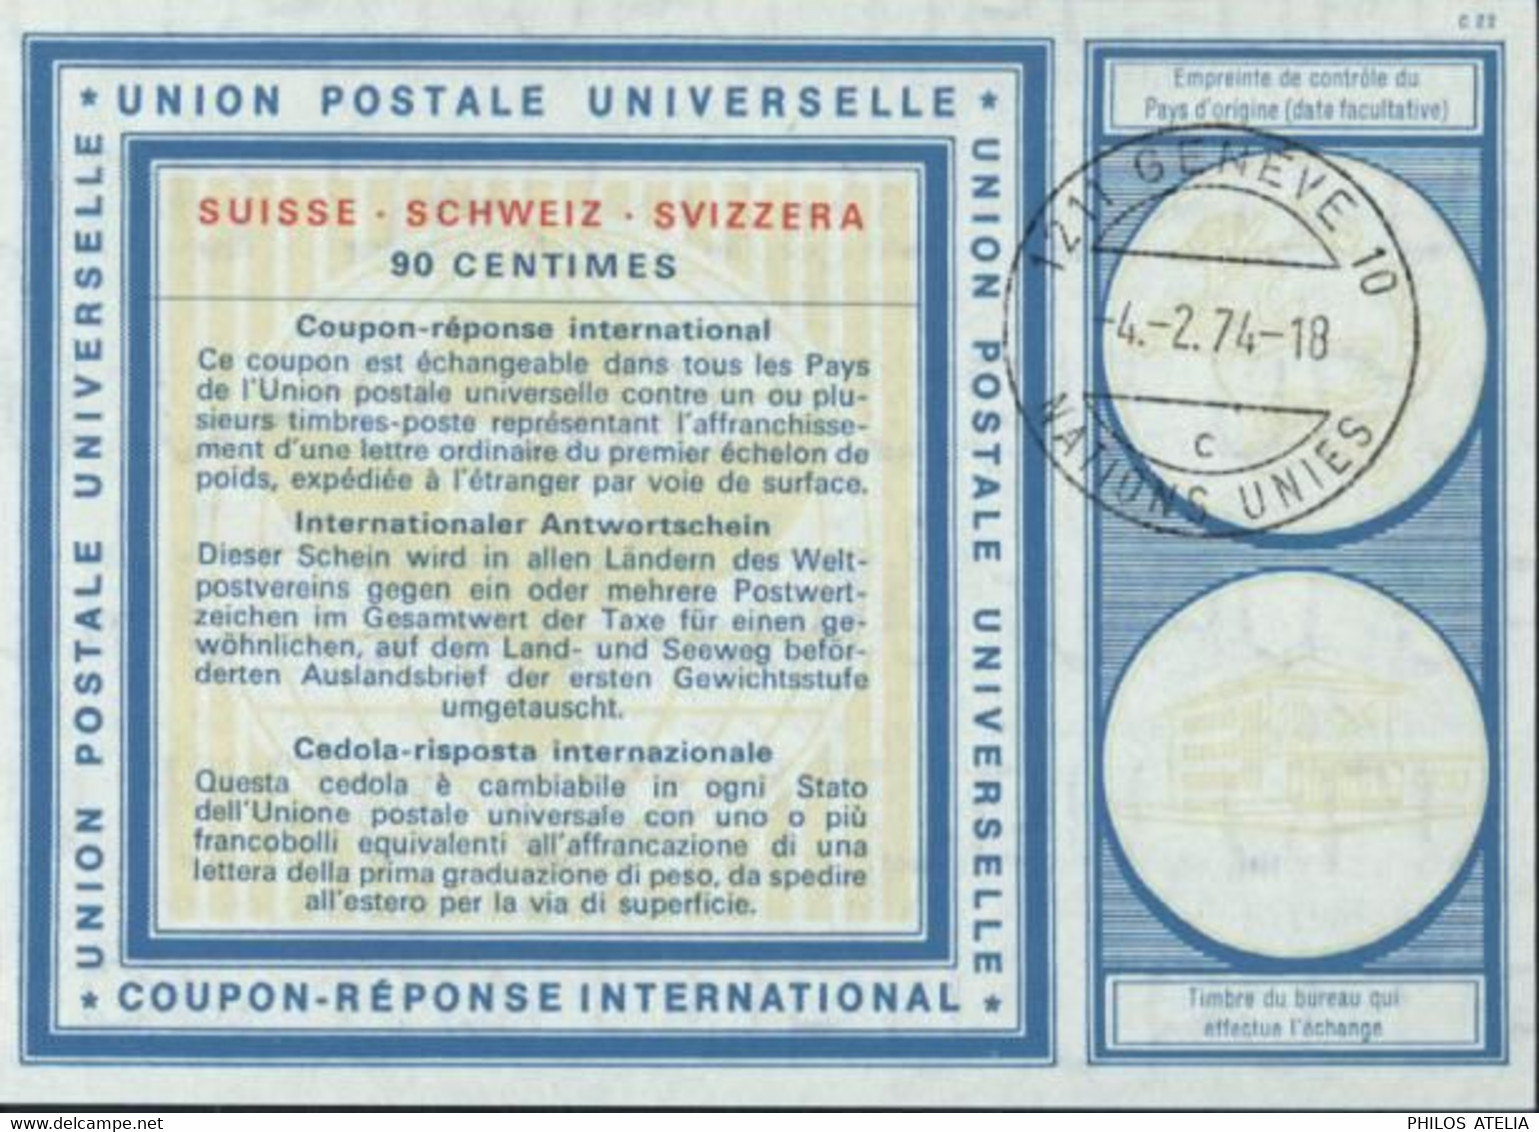 Coupon Réponse International UPU Suisse 90 Cts CAD 1211 Genève 10 Nations Unies 4 2 74 - 18 C - Lettres & Documents